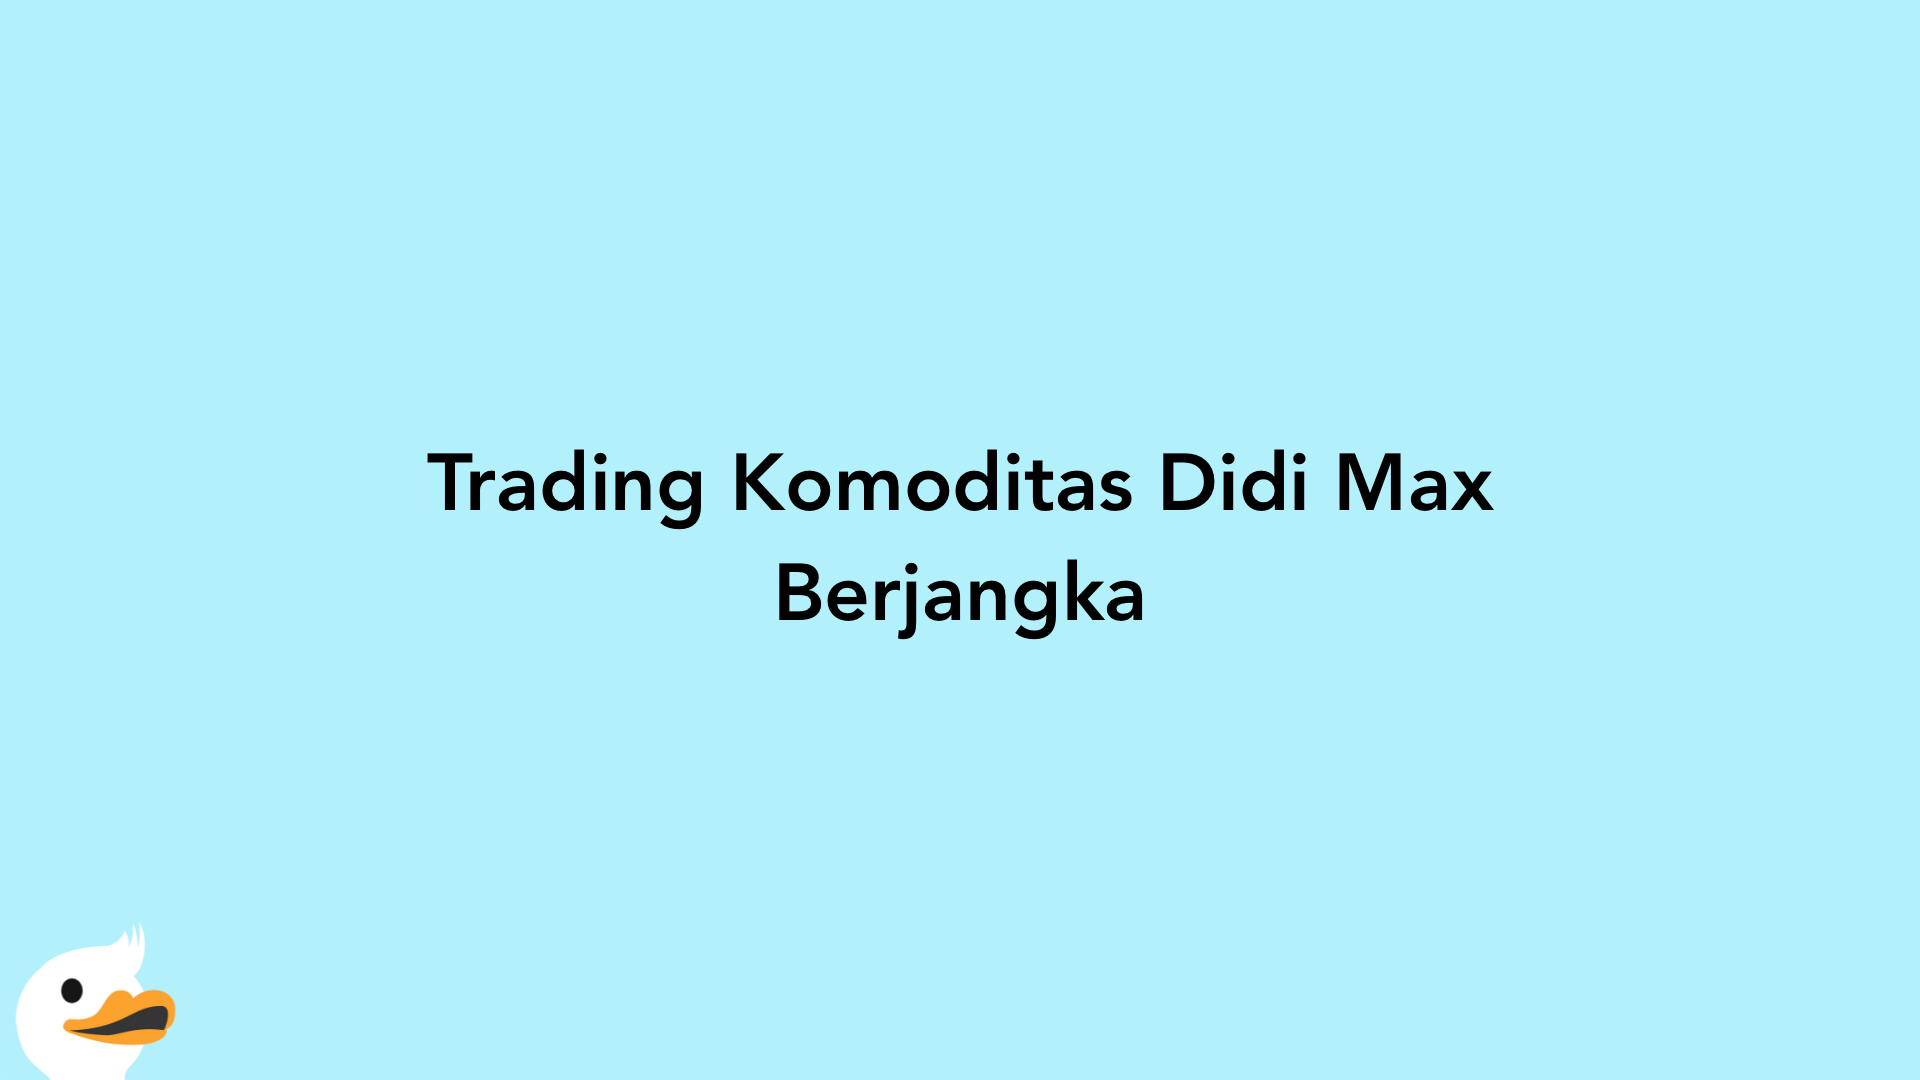 Trading Komoditas Didi Max Berjangka